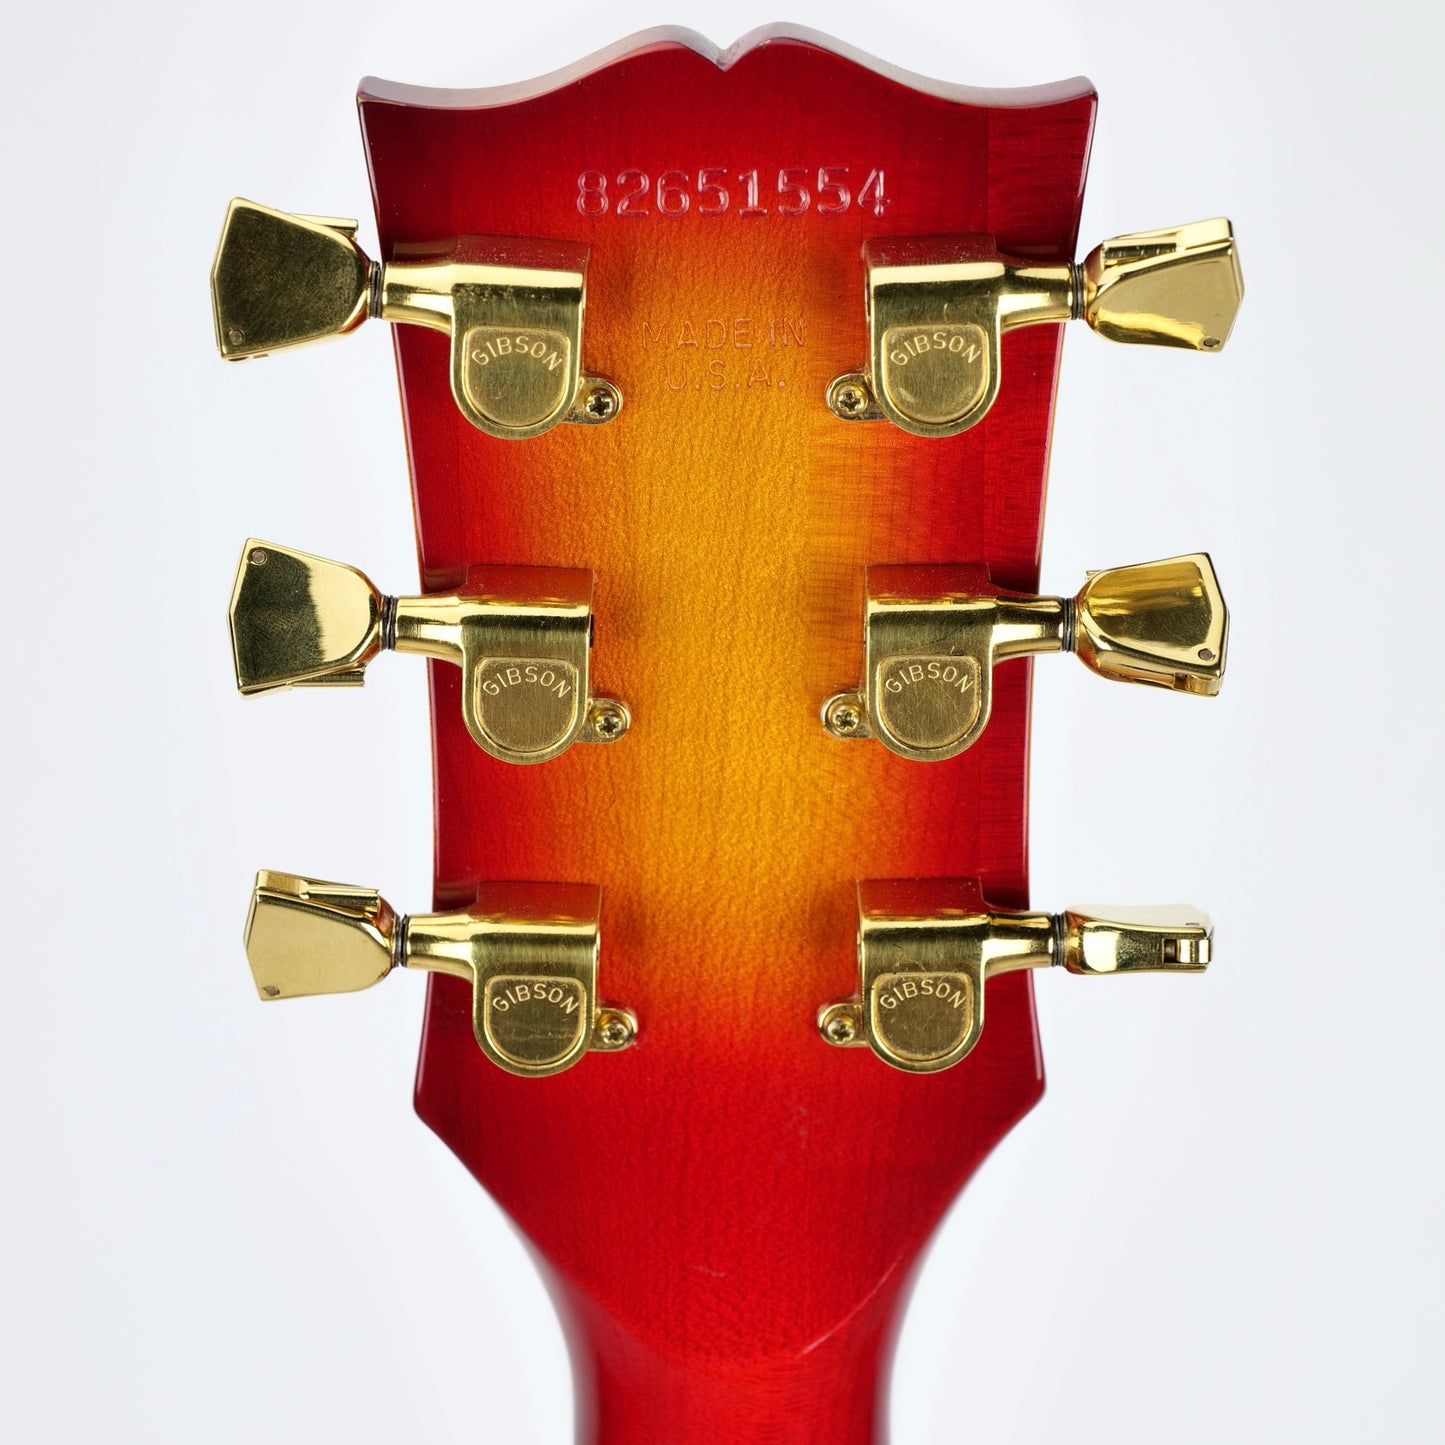 1981 Gibson Les Paul Custom - Cherry Sunburst